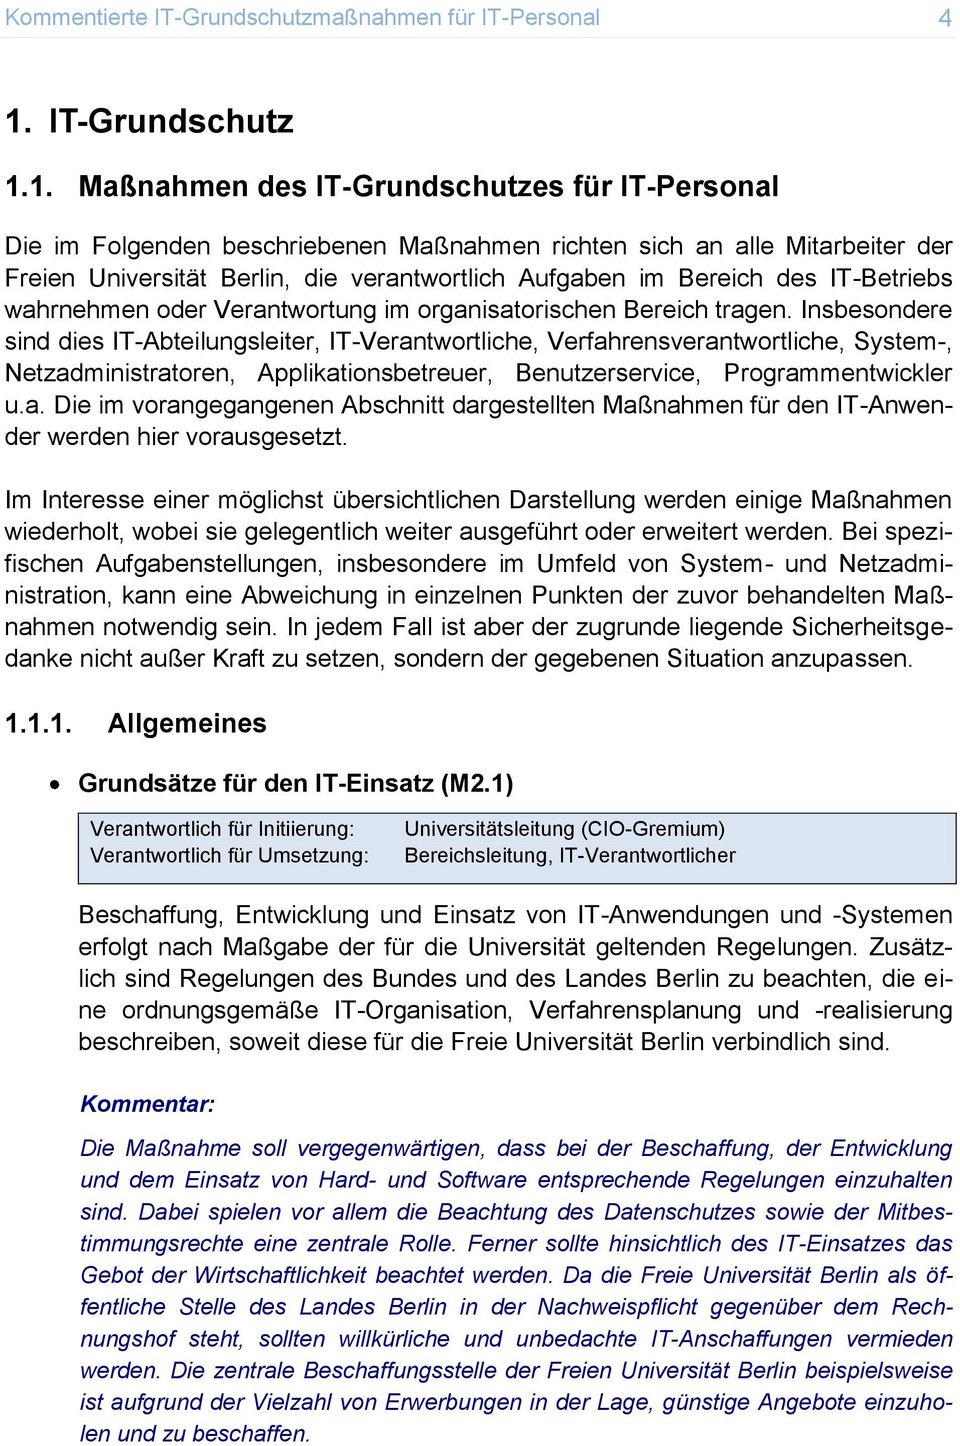 1. Maßnahmen des IT-Grundschutzes für Die im Folgenden beschriebenen Maßnahmen richten sich an alle Mitarbeiter der Freien Universität Berlin, die verantwortlich Aufgaben im Bereich des IT-Betriebs